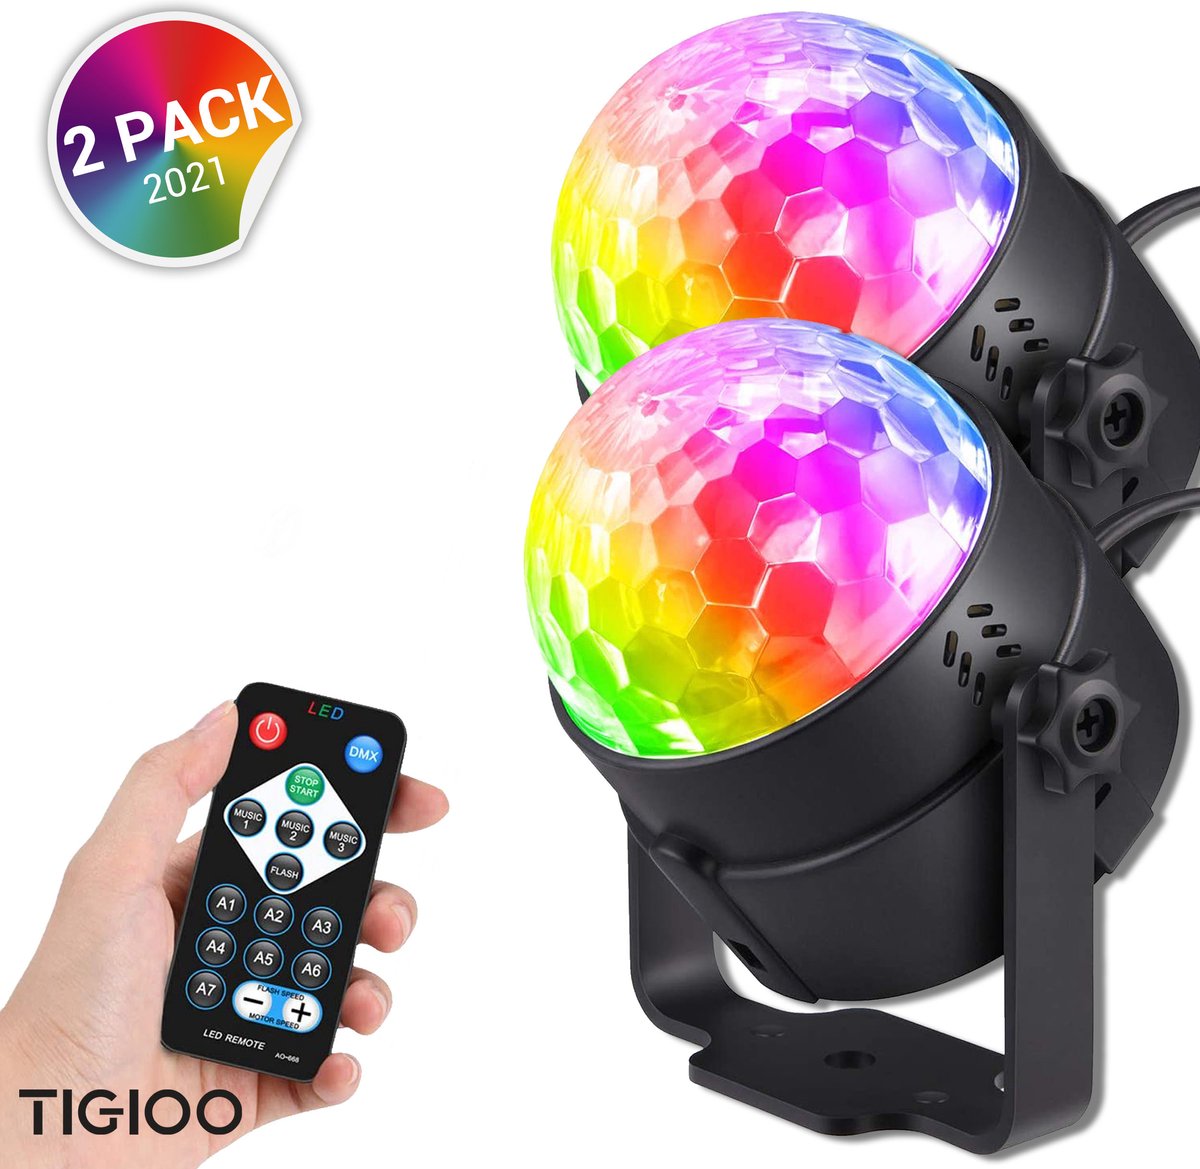 Mini boule disco lumière USB, disco ball LED party lamp, commande vocale